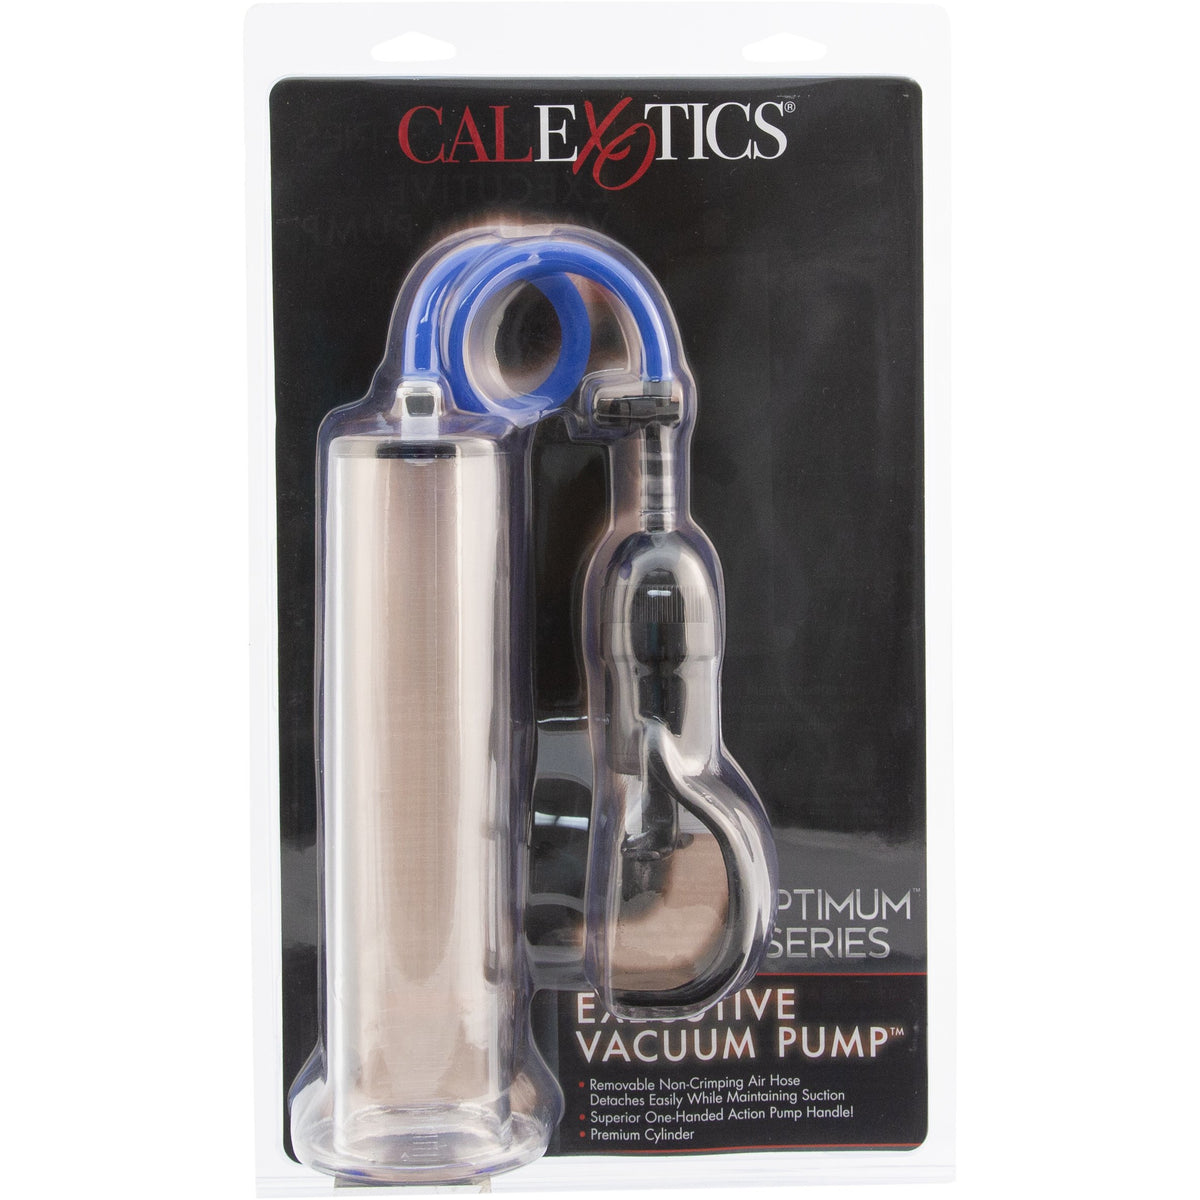 CalExotics Executive Vacuum Pump